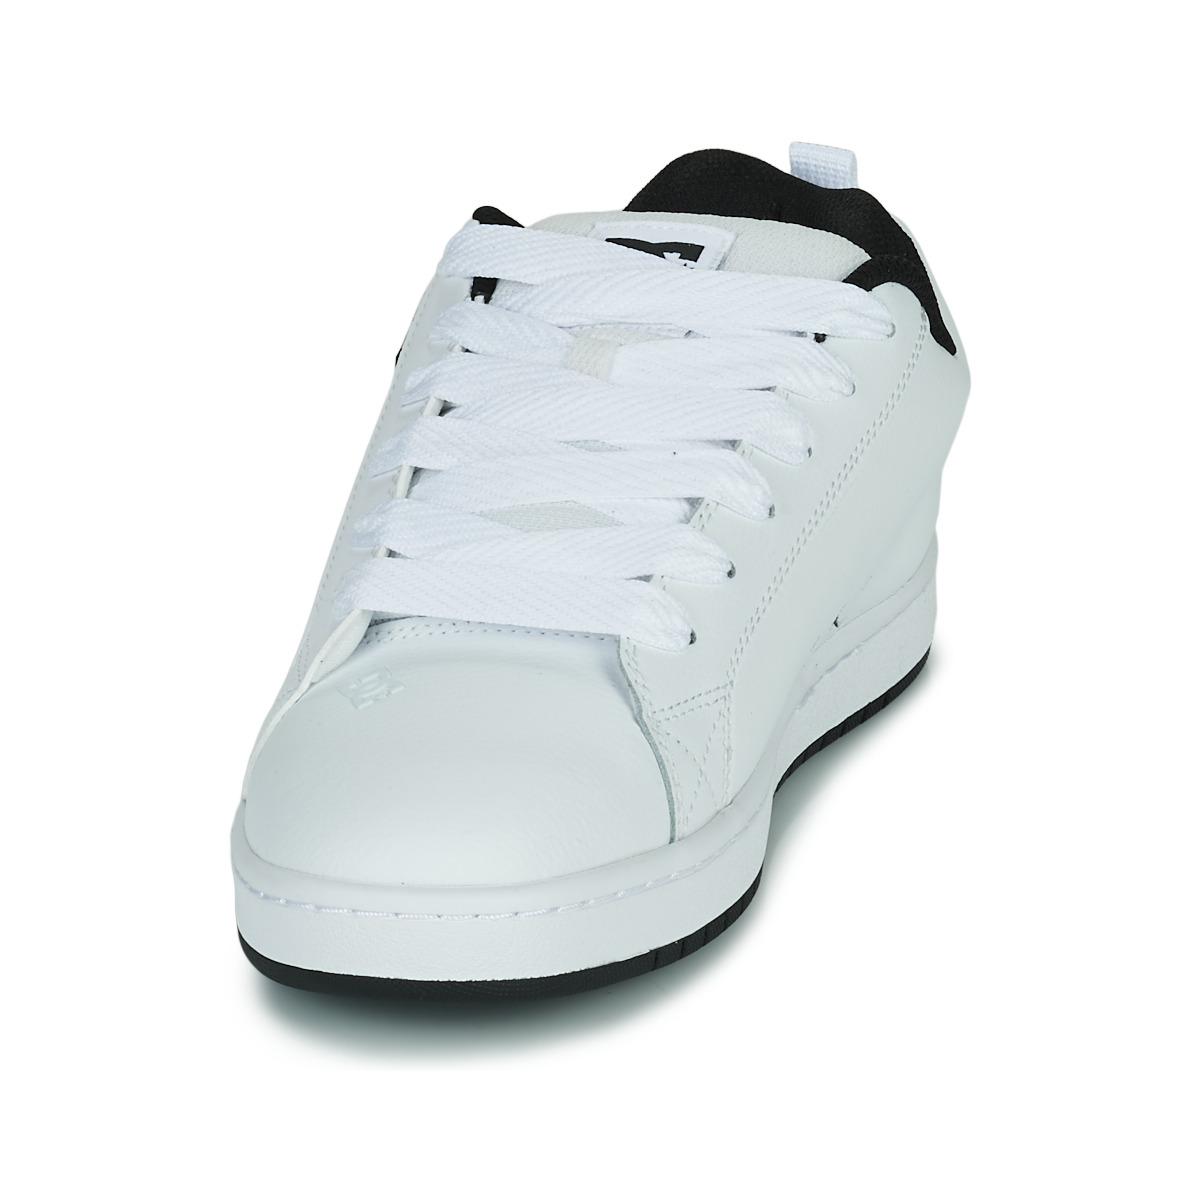 DC Shoes Blanc / Noir COURT GRAFFIK O6qwKx1s